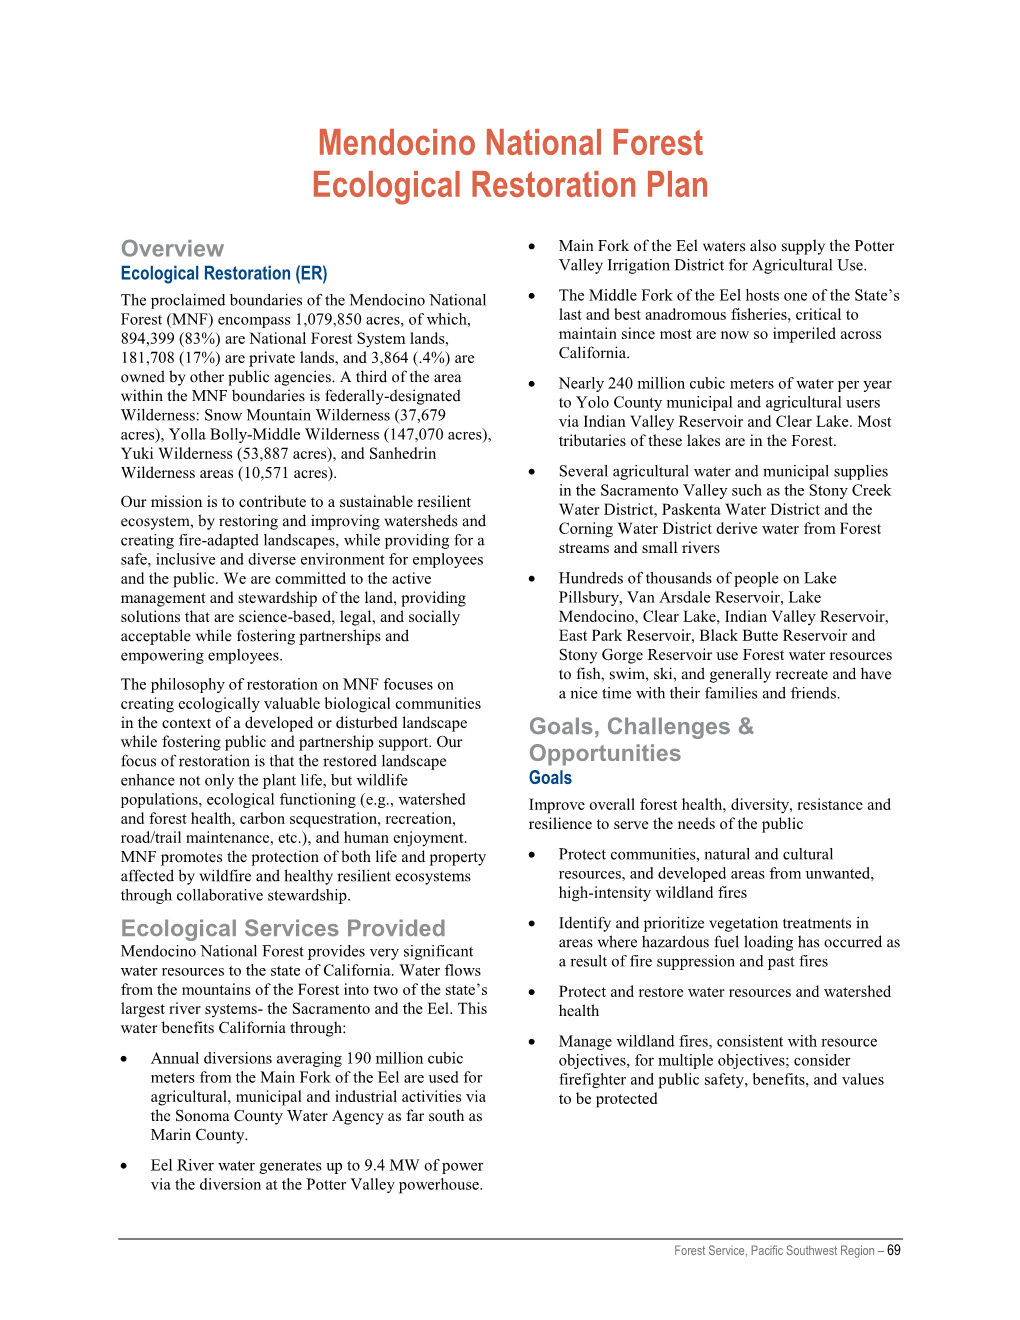 Mendocino National Forest Ecological Restoration Plan